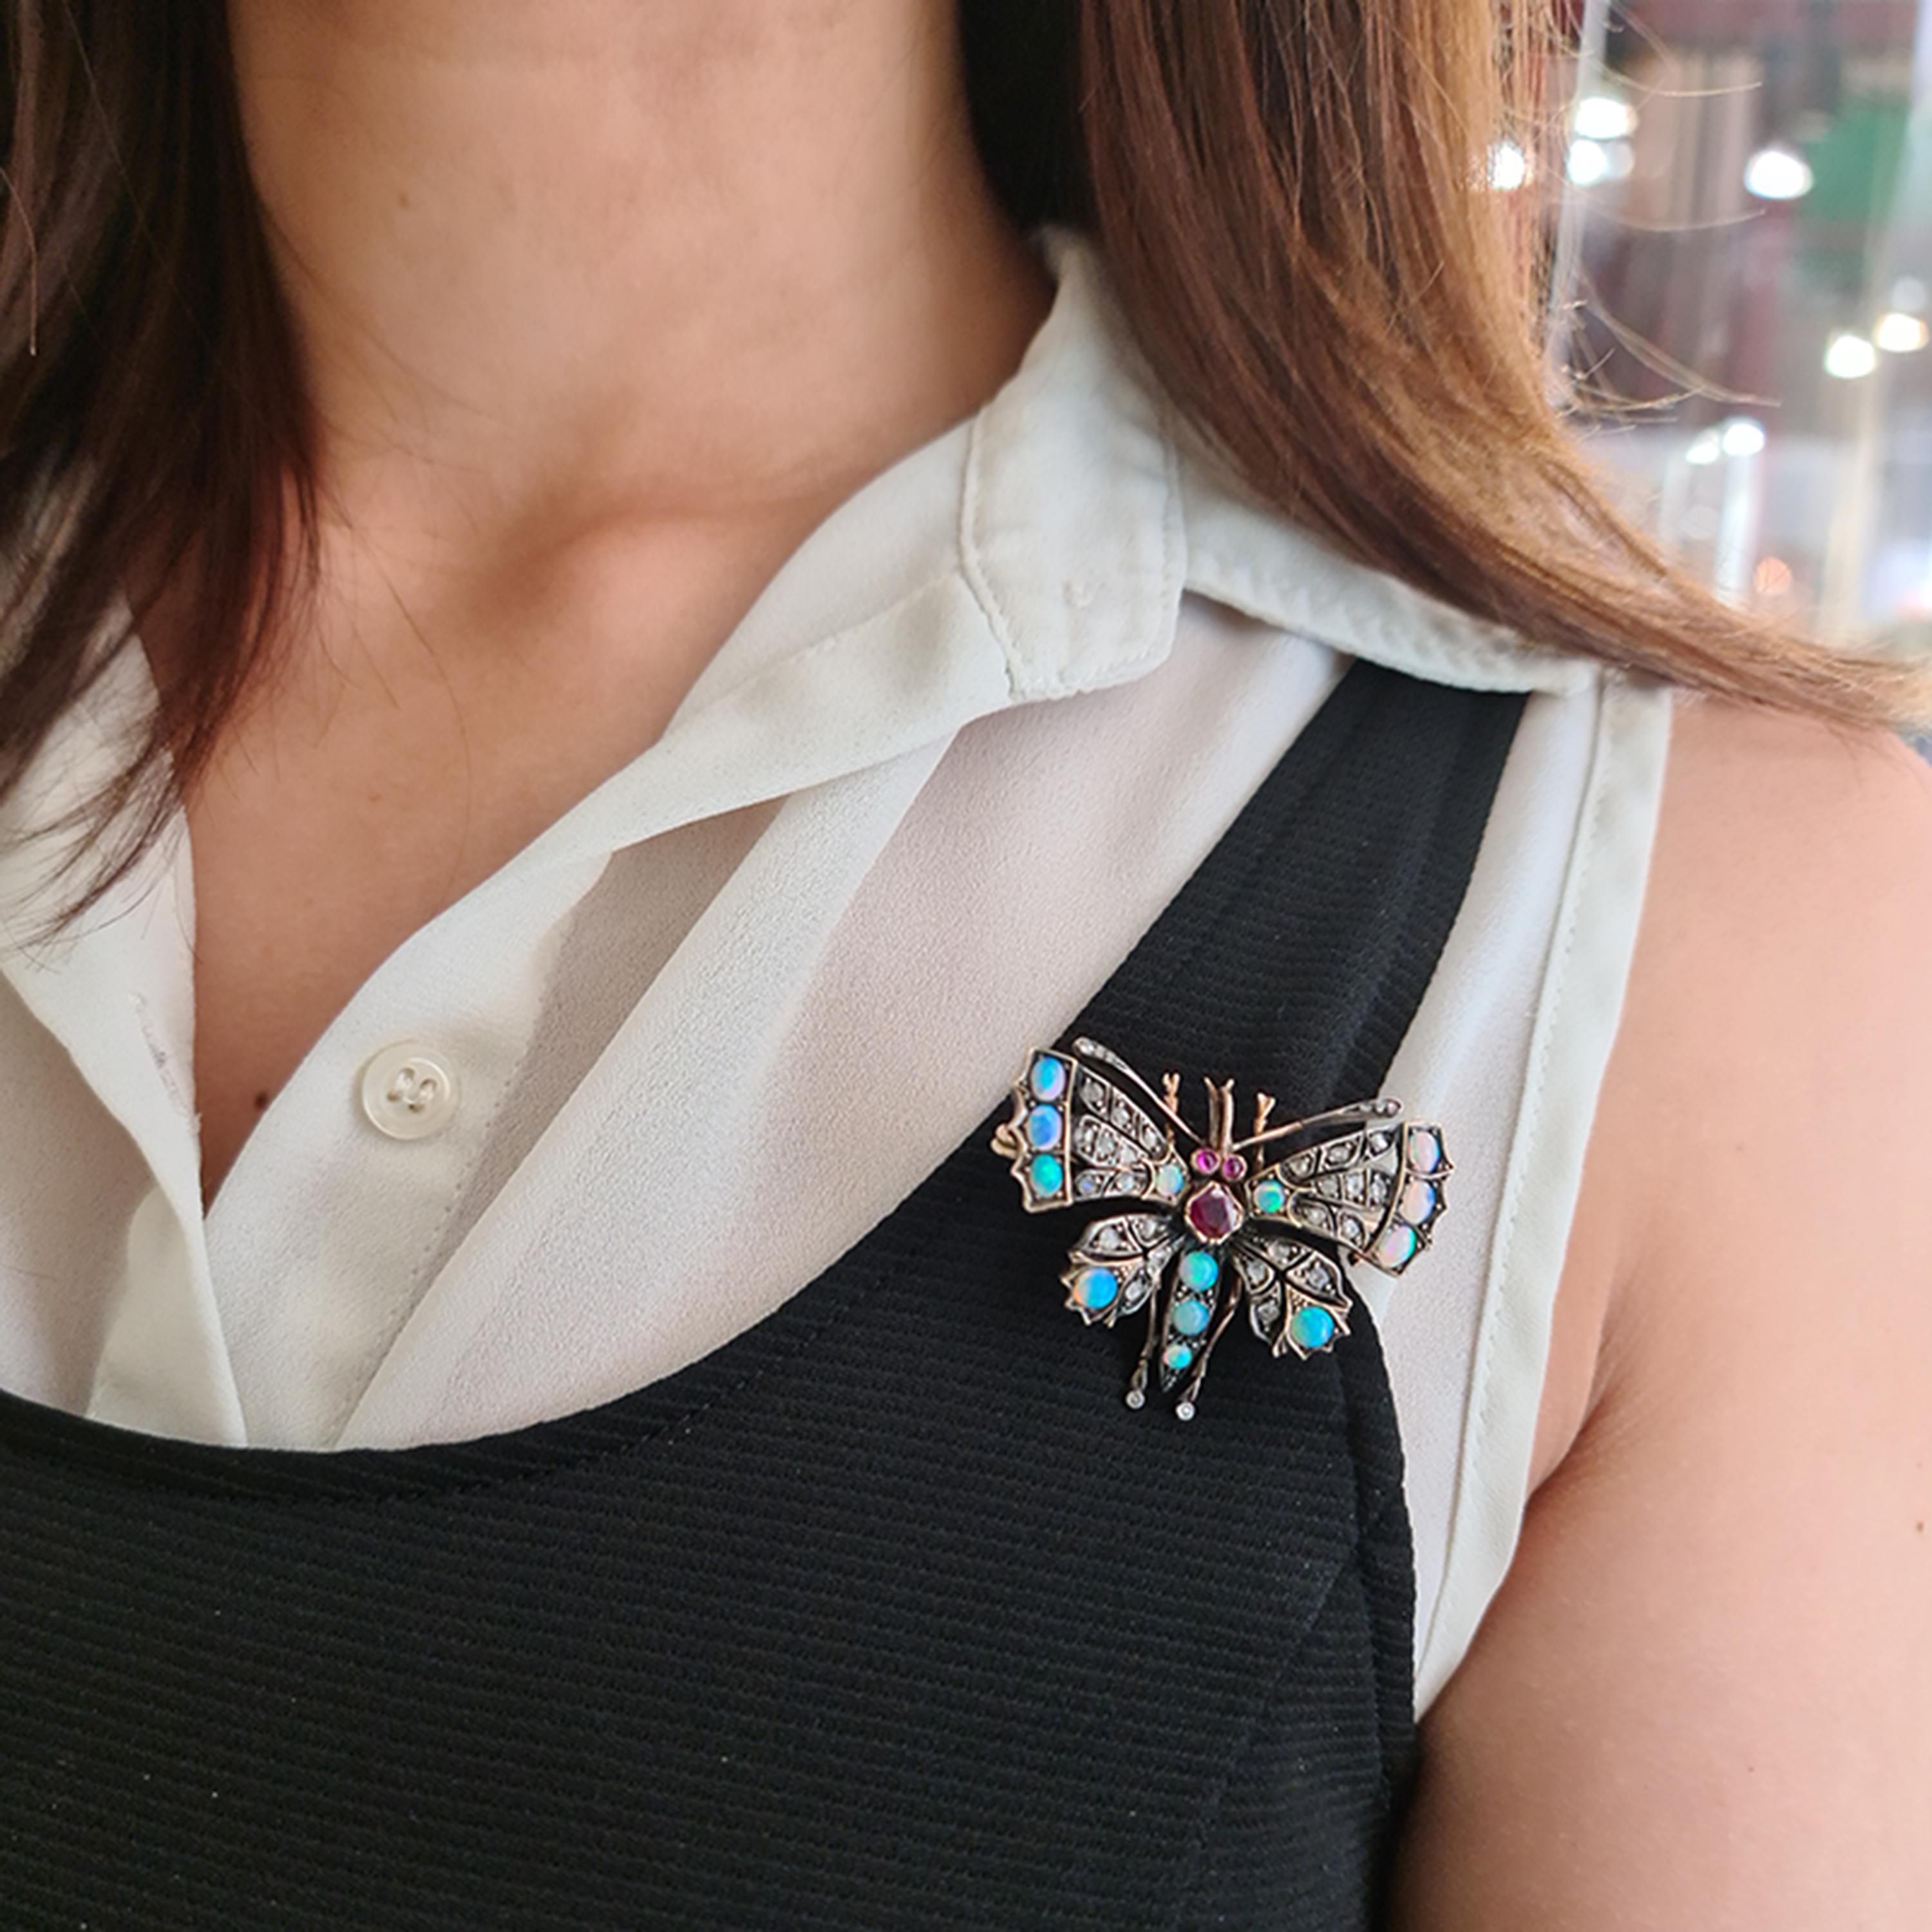 opal butterfly brooch